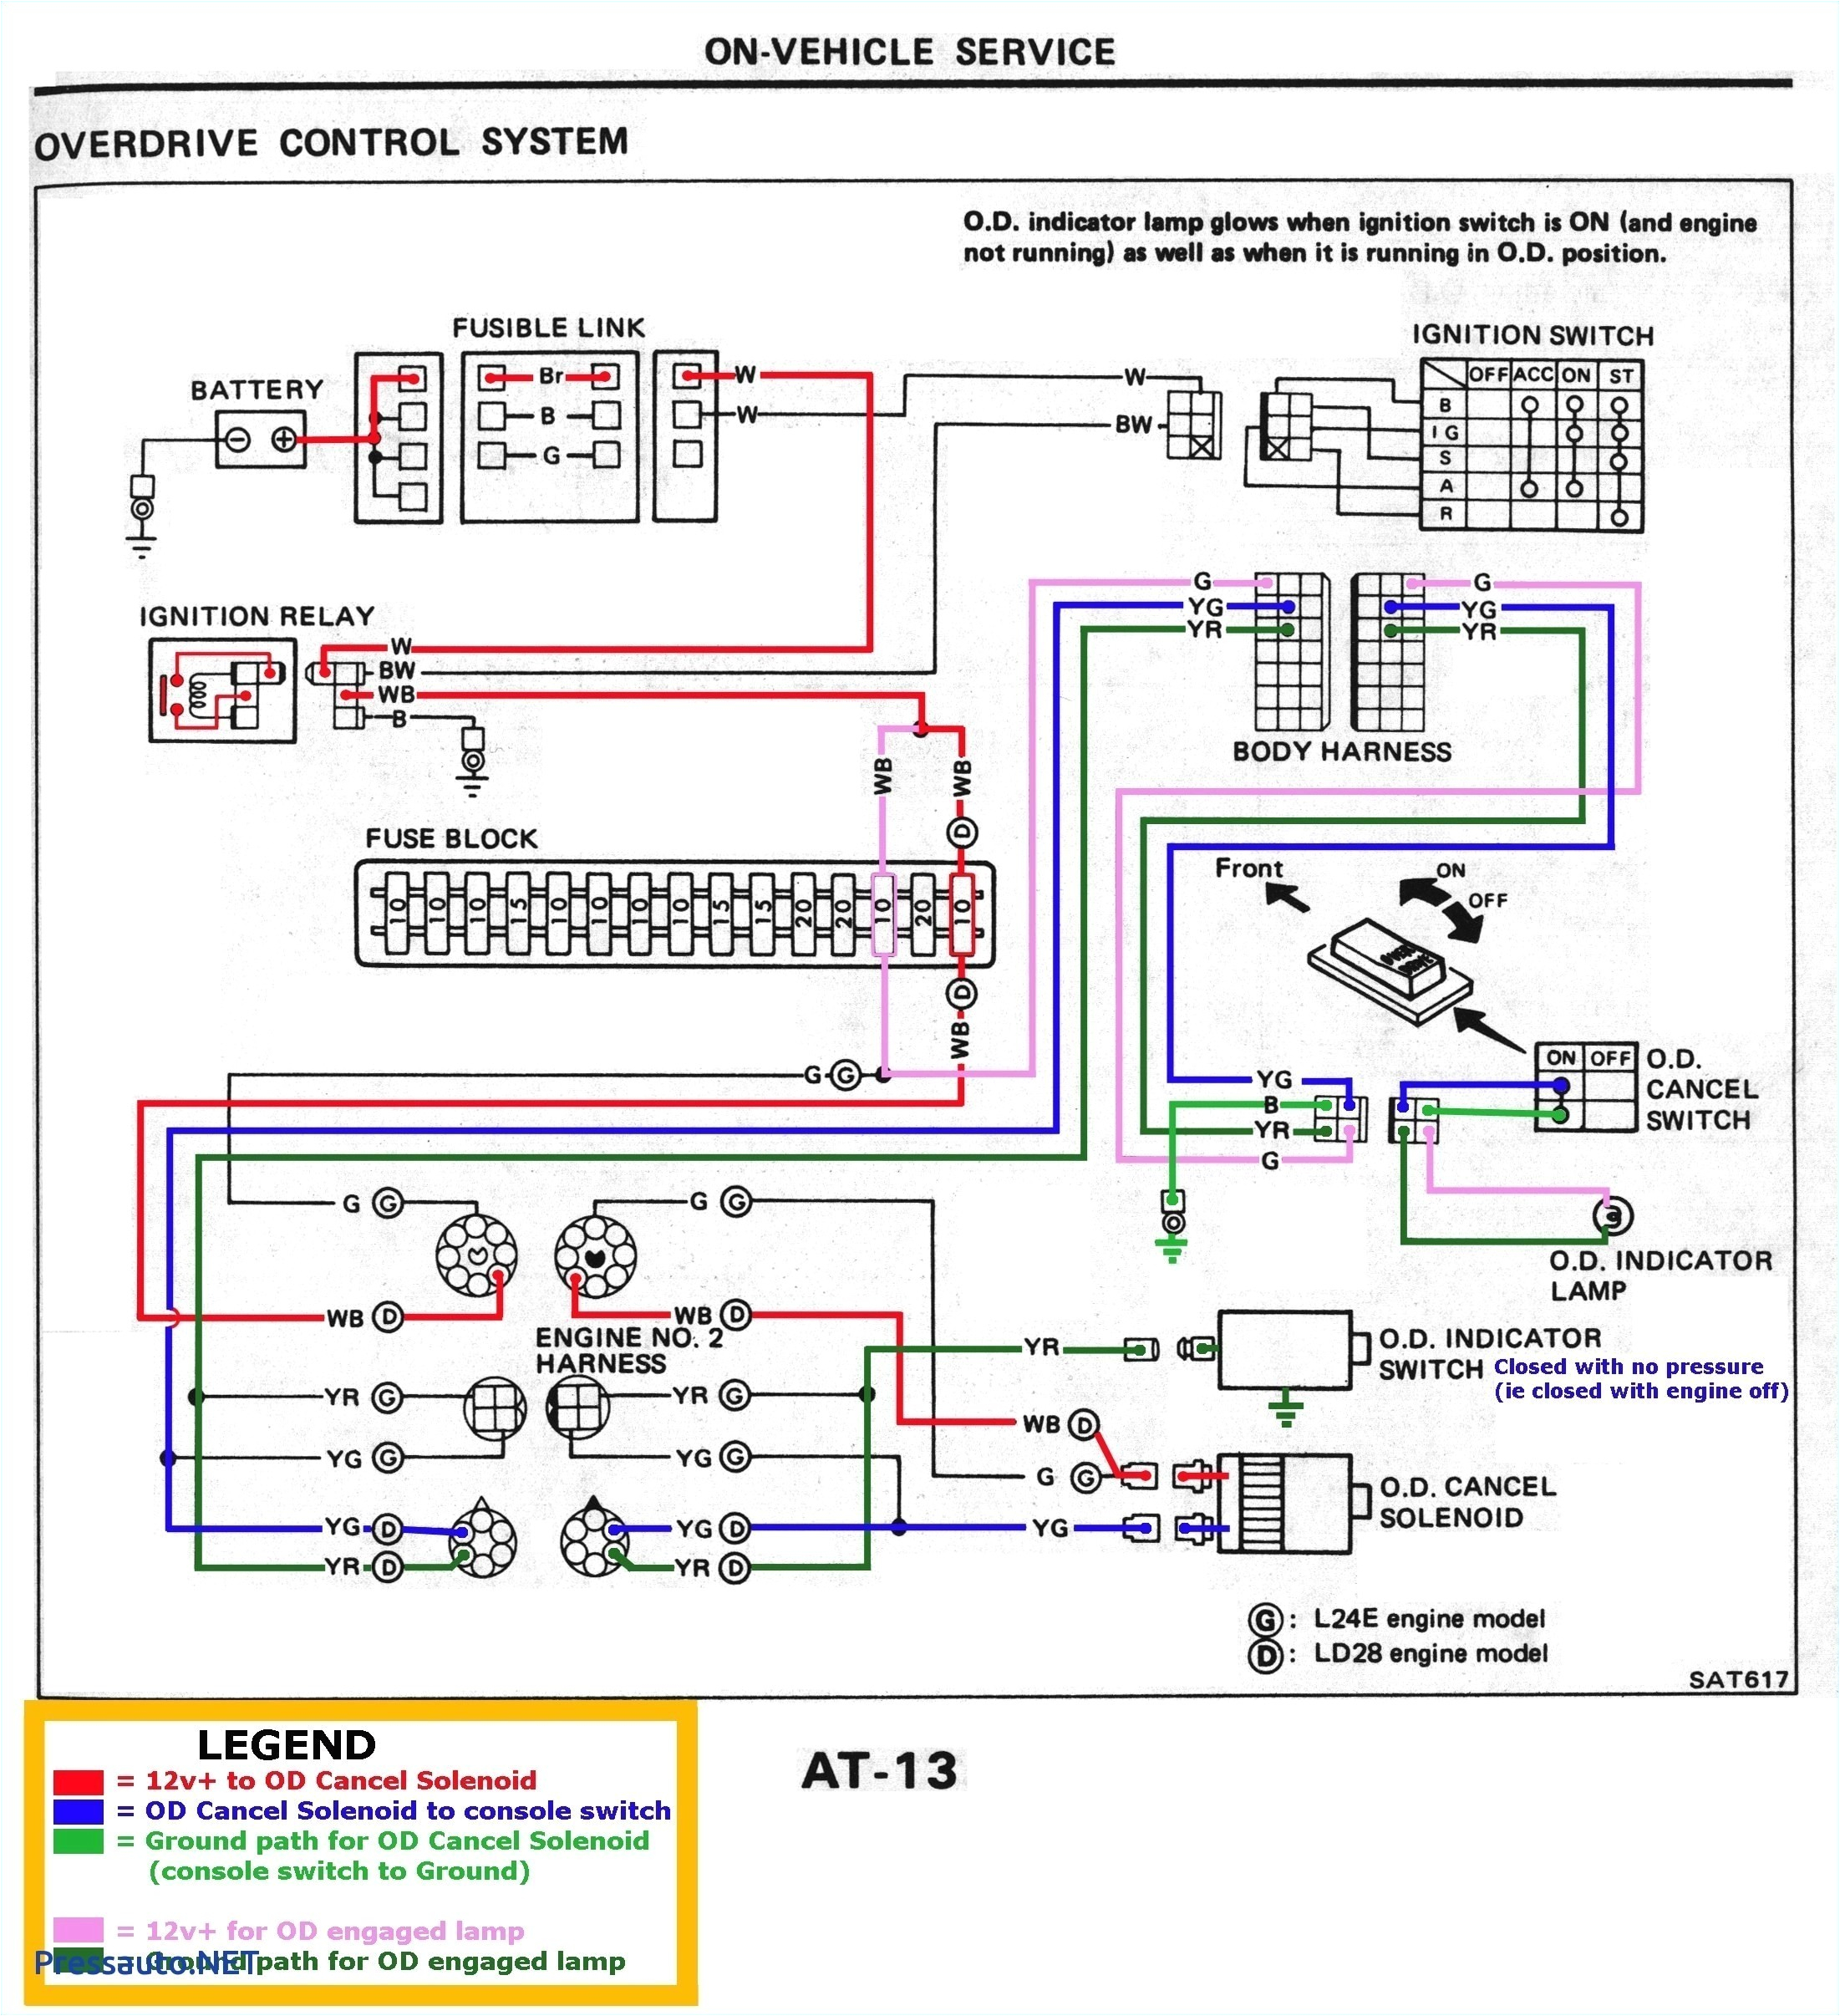 allen bradley smc 3 wiring diagram awesome smc ceiling fan wiring s m c ceiling fan schematics